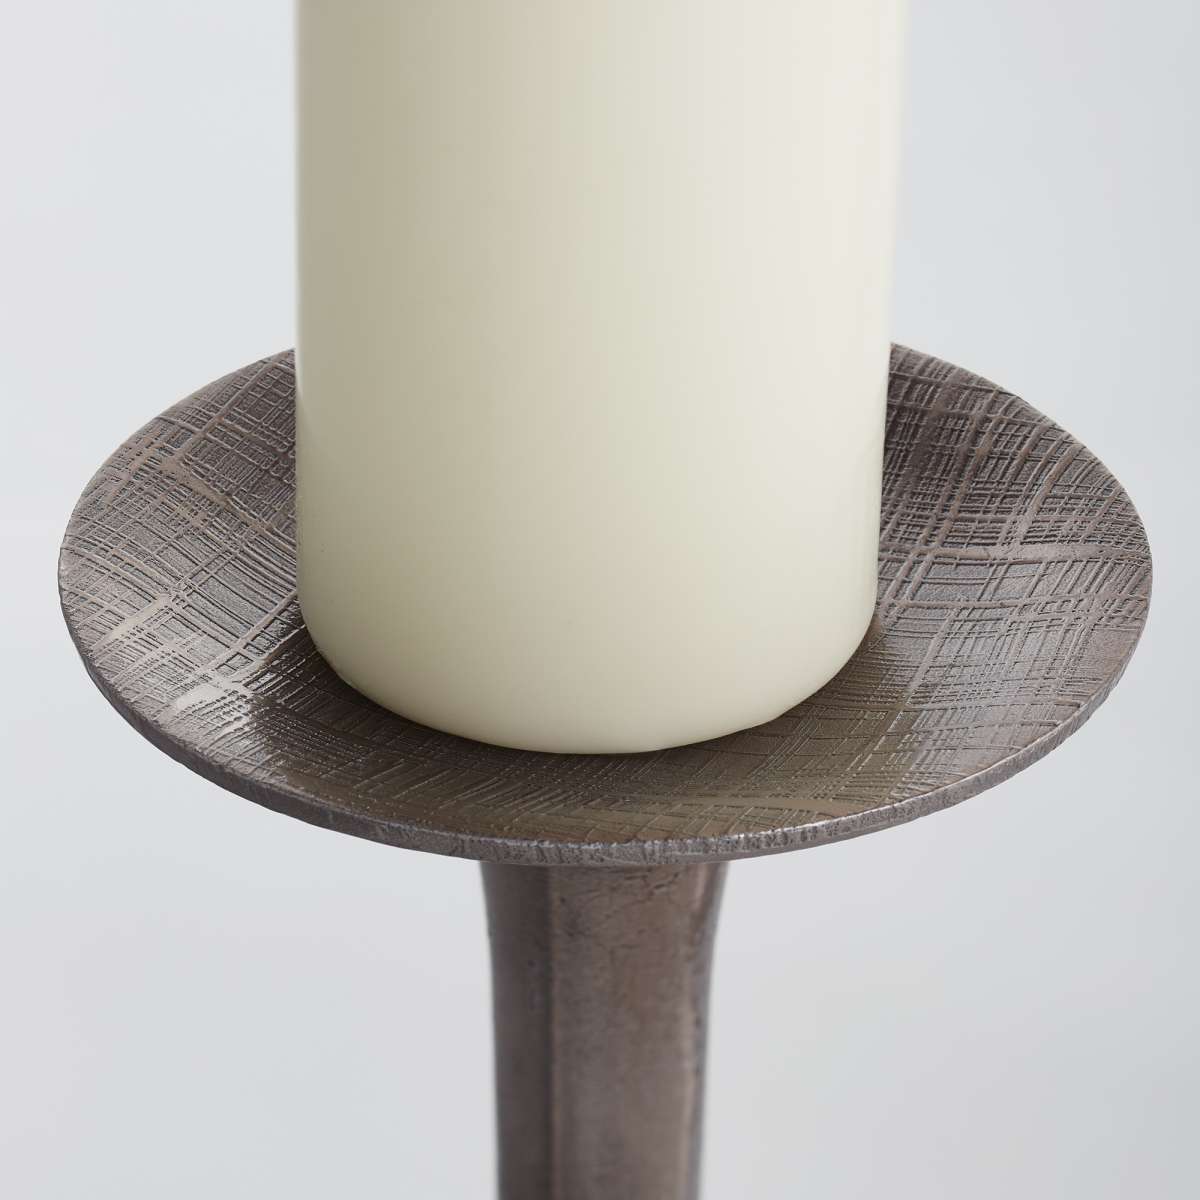 Medium Lucus Candleholder By Cyan Design | Cyan Design | Modishstore - 6